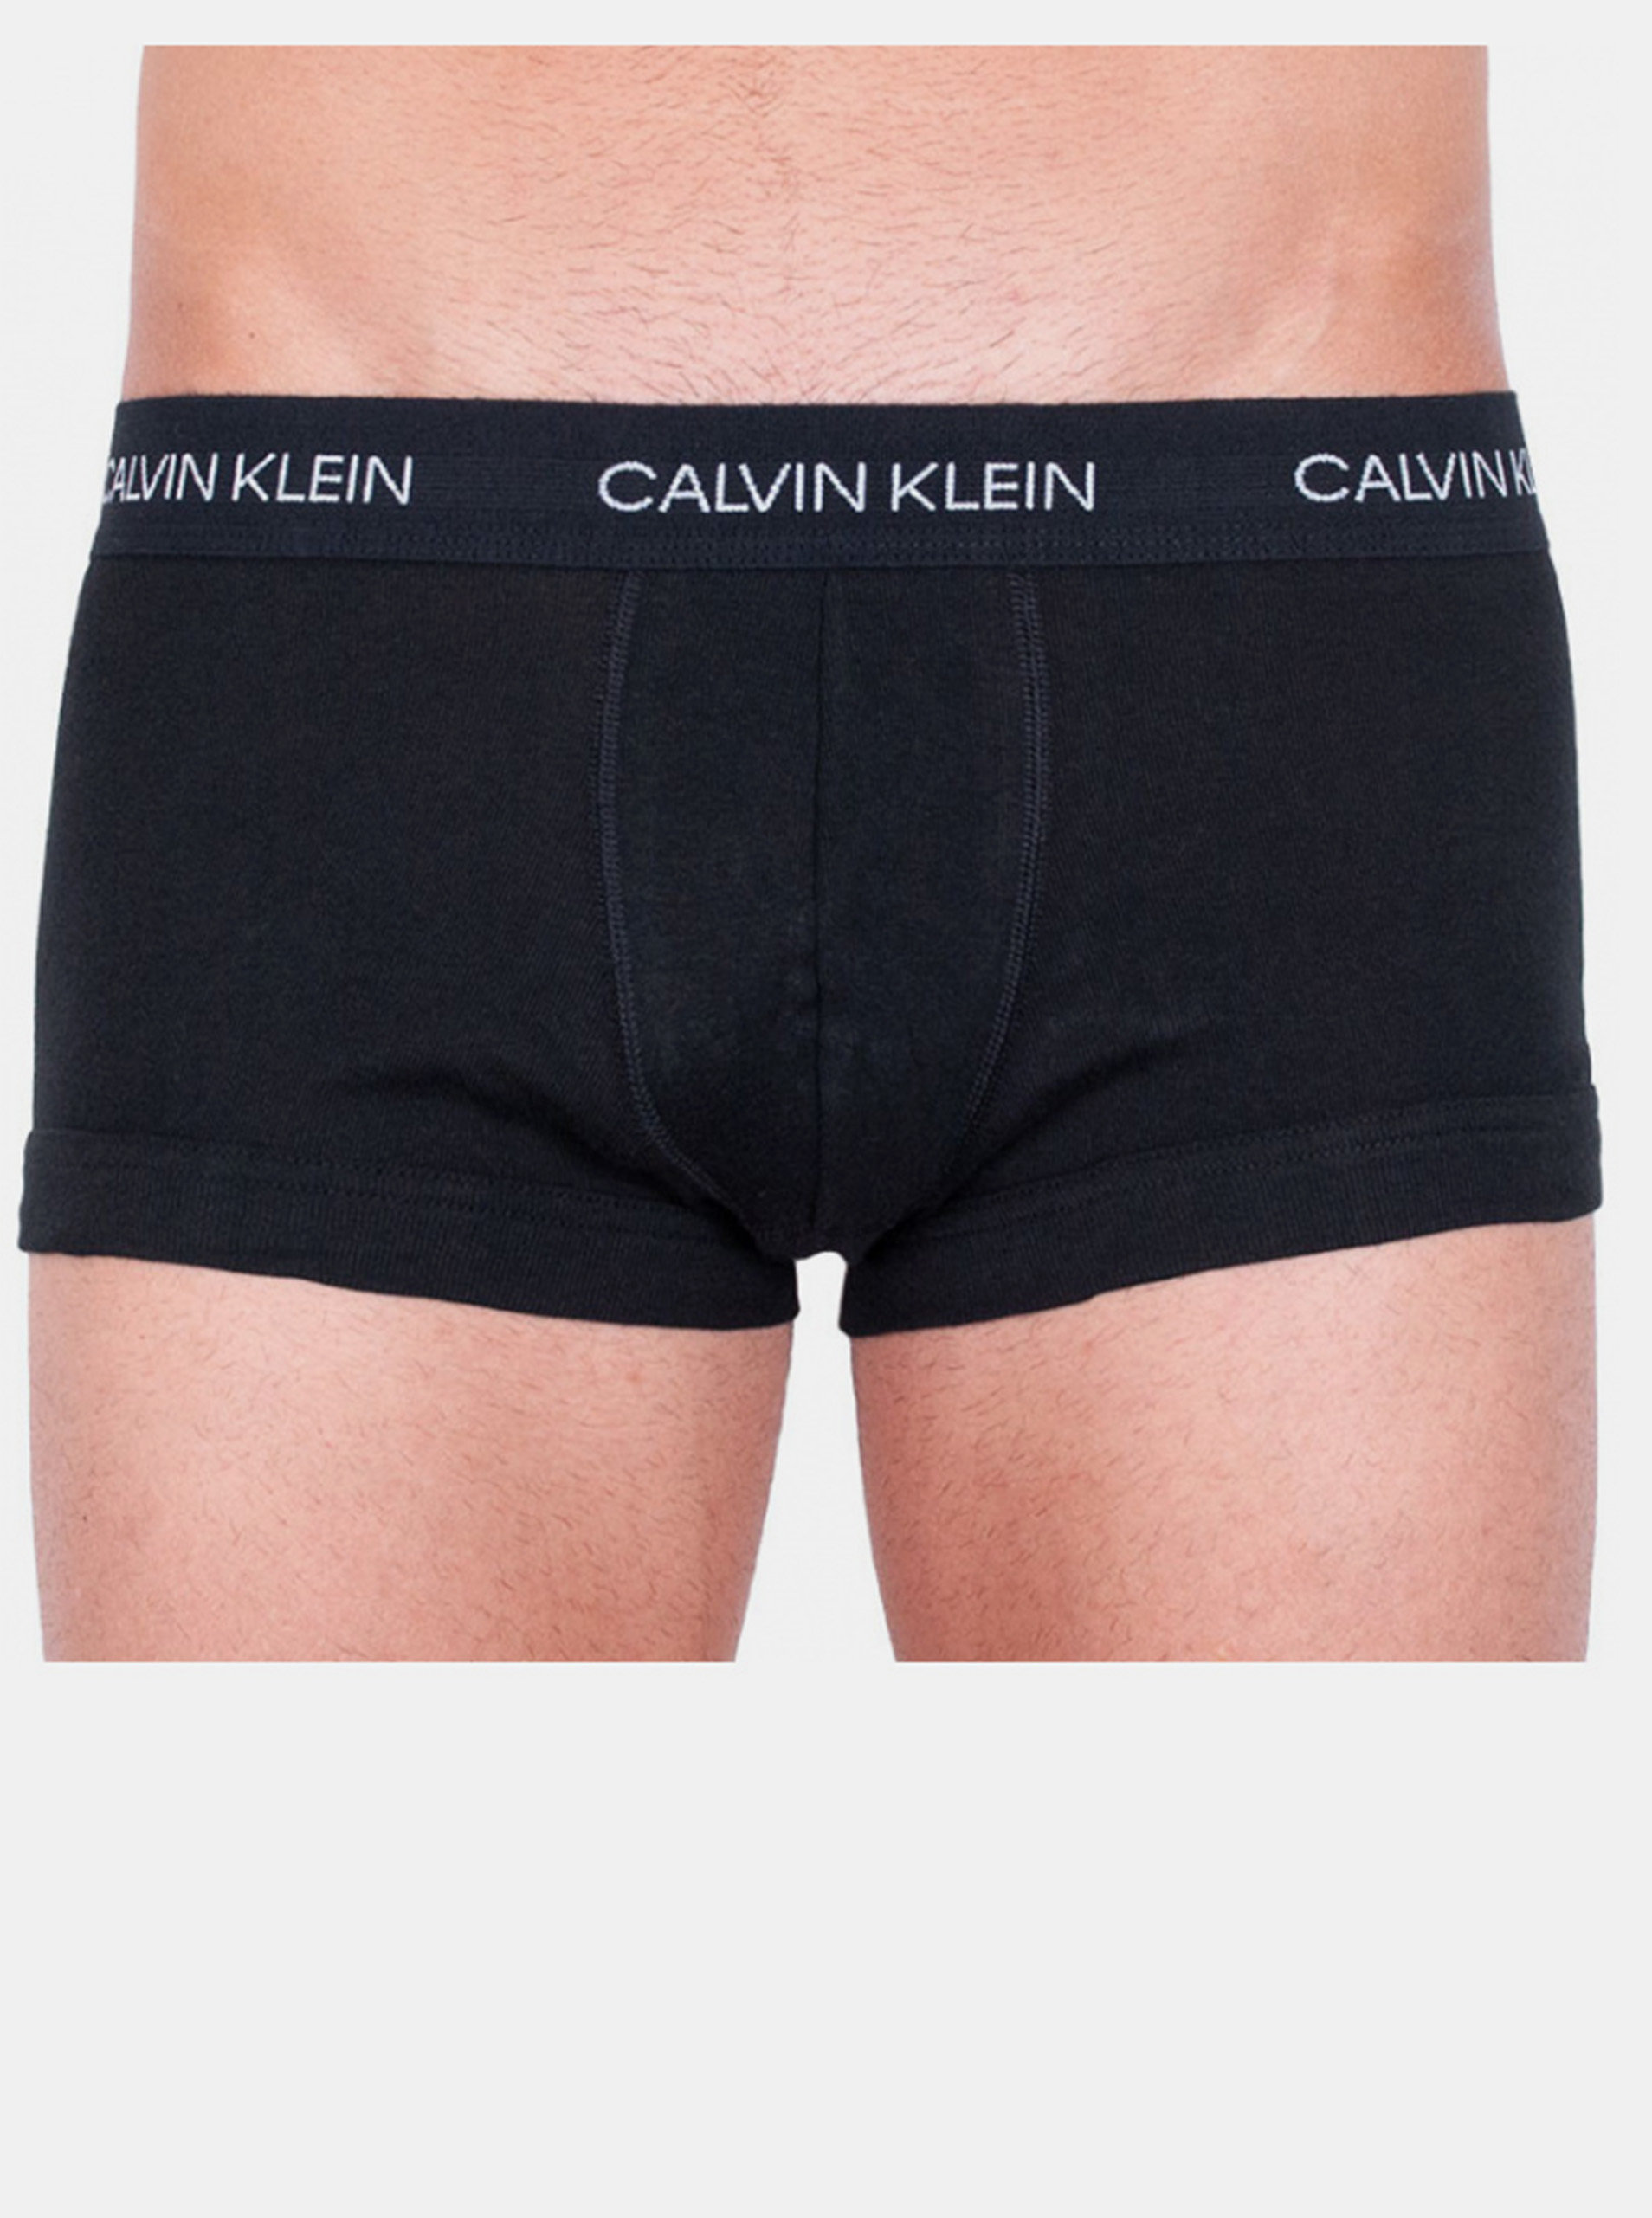 Pánské boxerky Calvin Klein černé